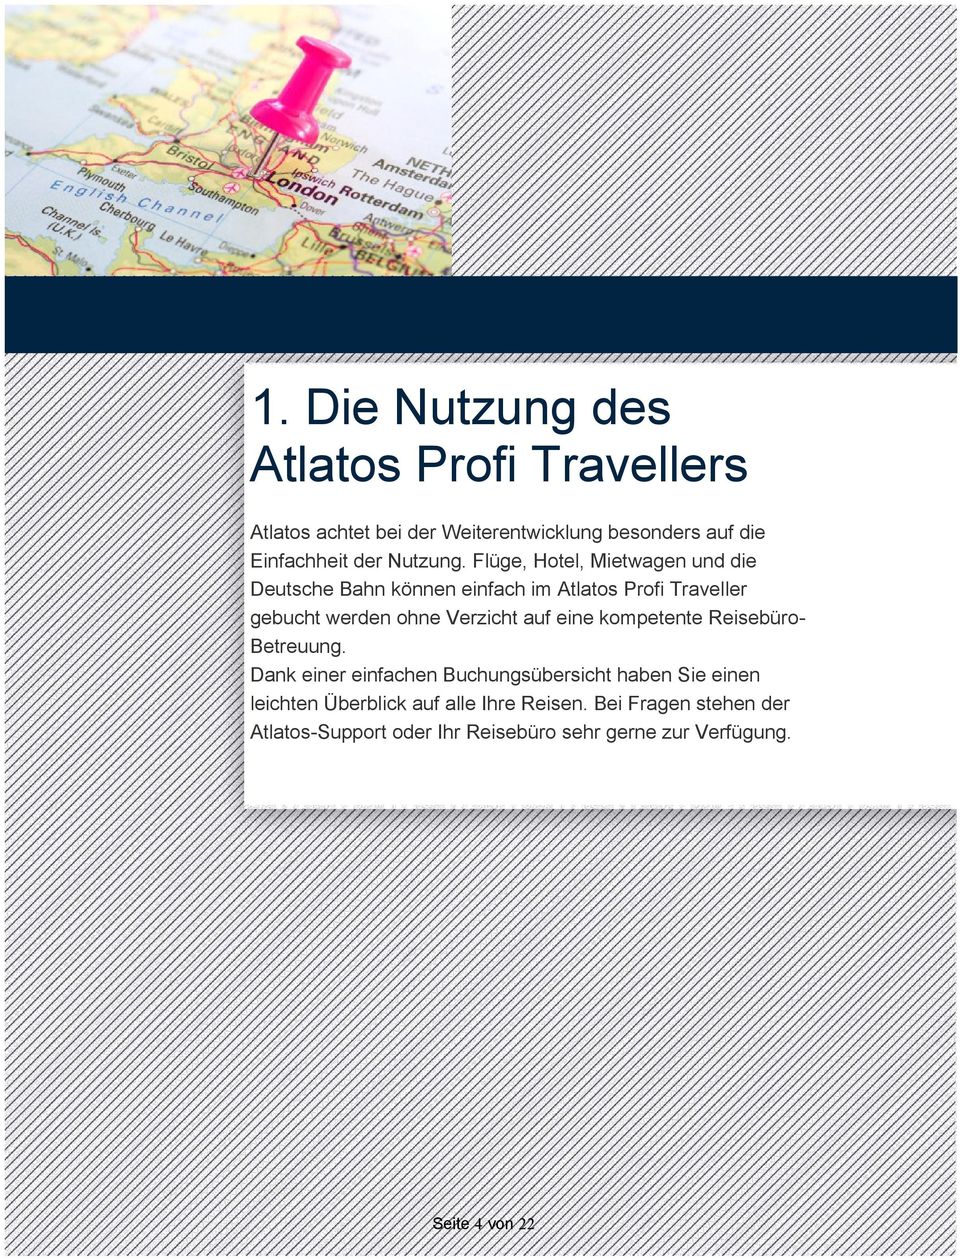 Flüge, Hotel, Mietwagen und die Deutsche Bahn können einfach im Atlatos Profi Traveller gebucht werden ohne Verzicht